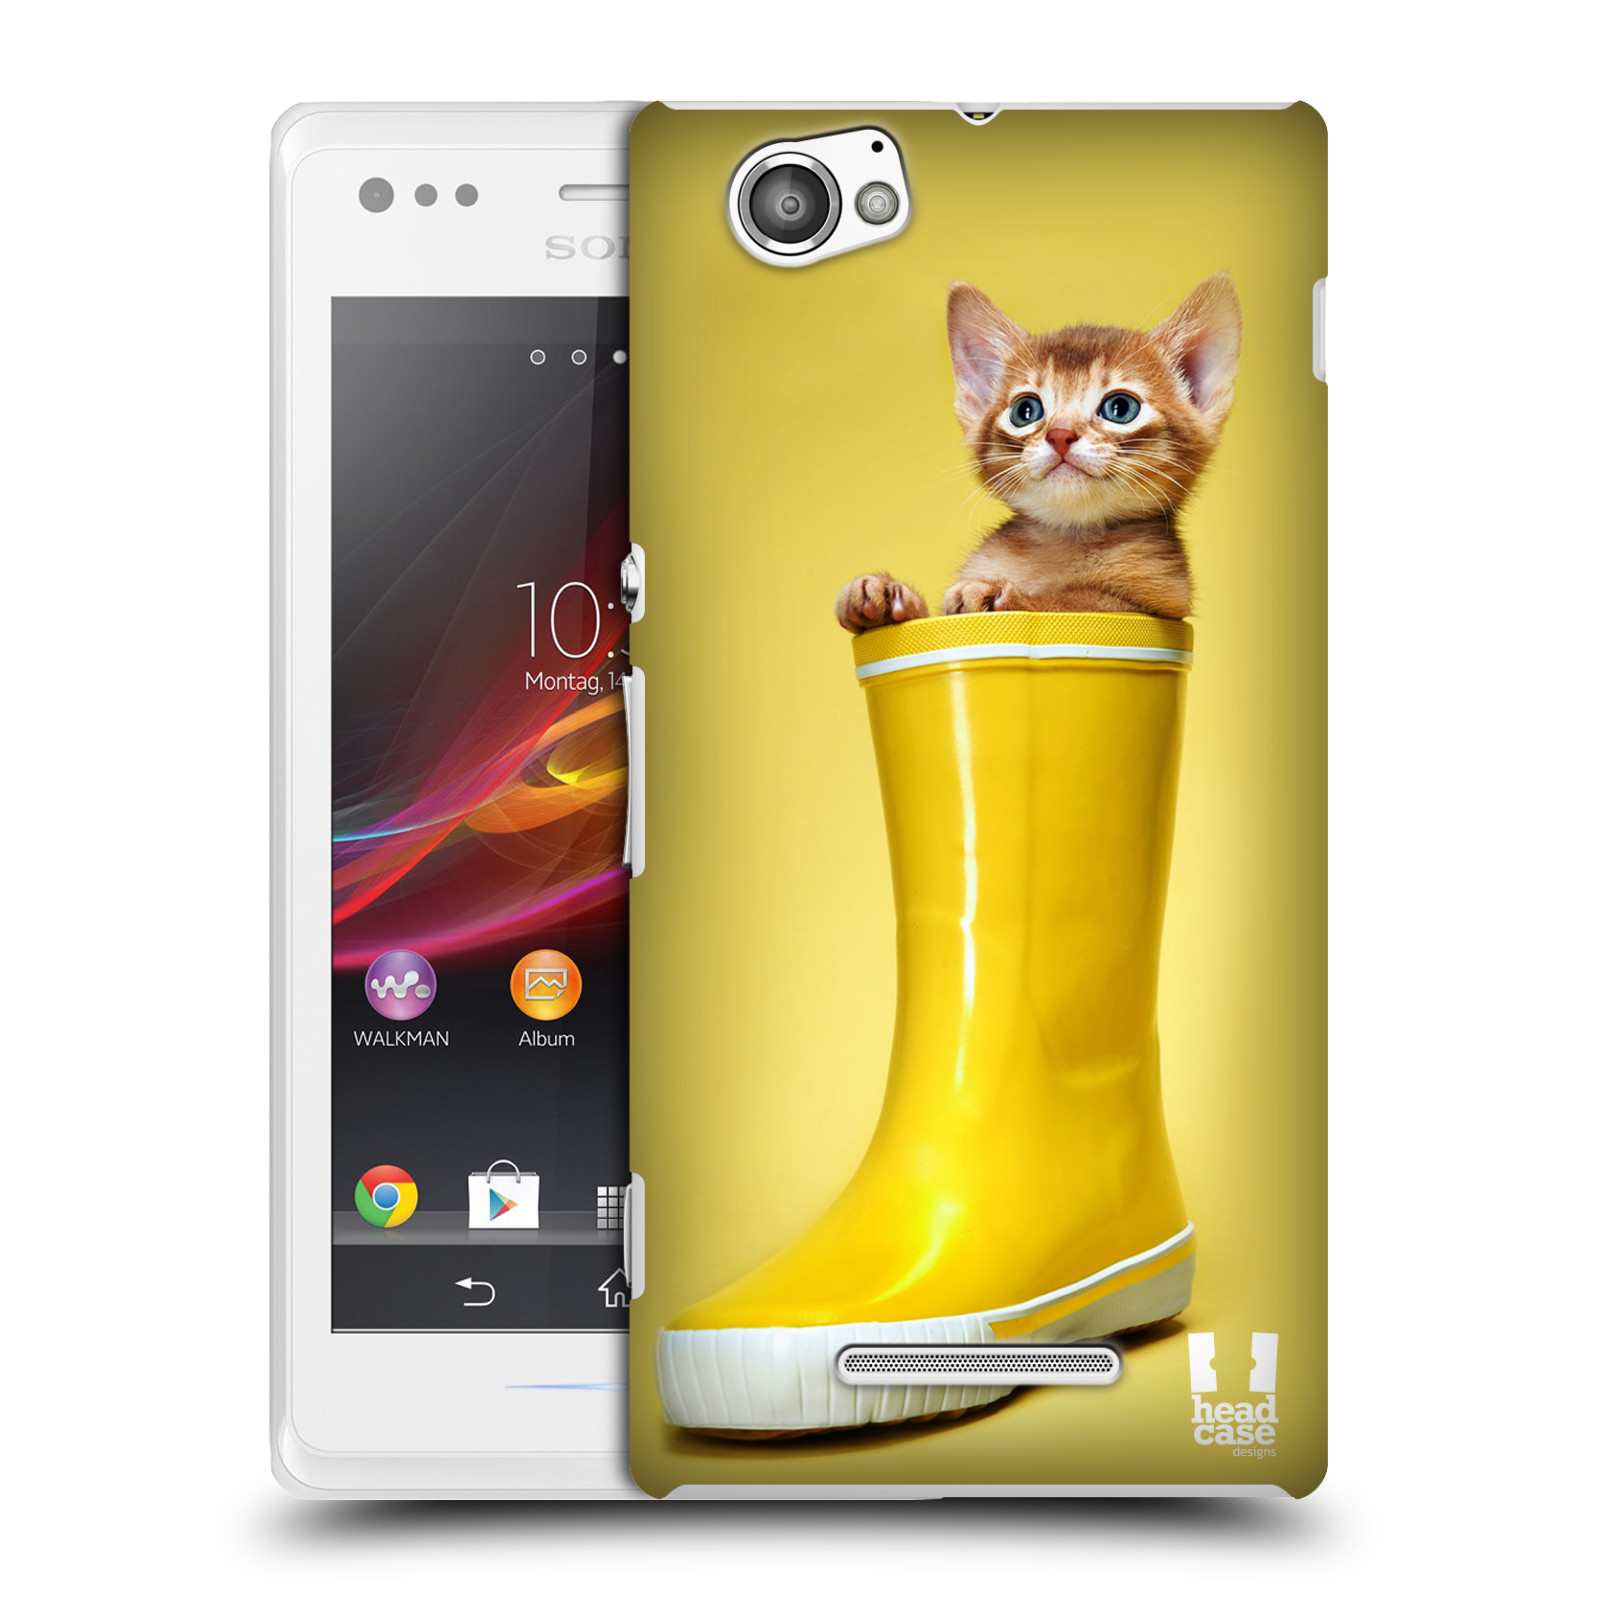 HEAD CASE plastový obal na mobil Sony Xperia M vzor Legrační zvířátka kotě v botě žlutá